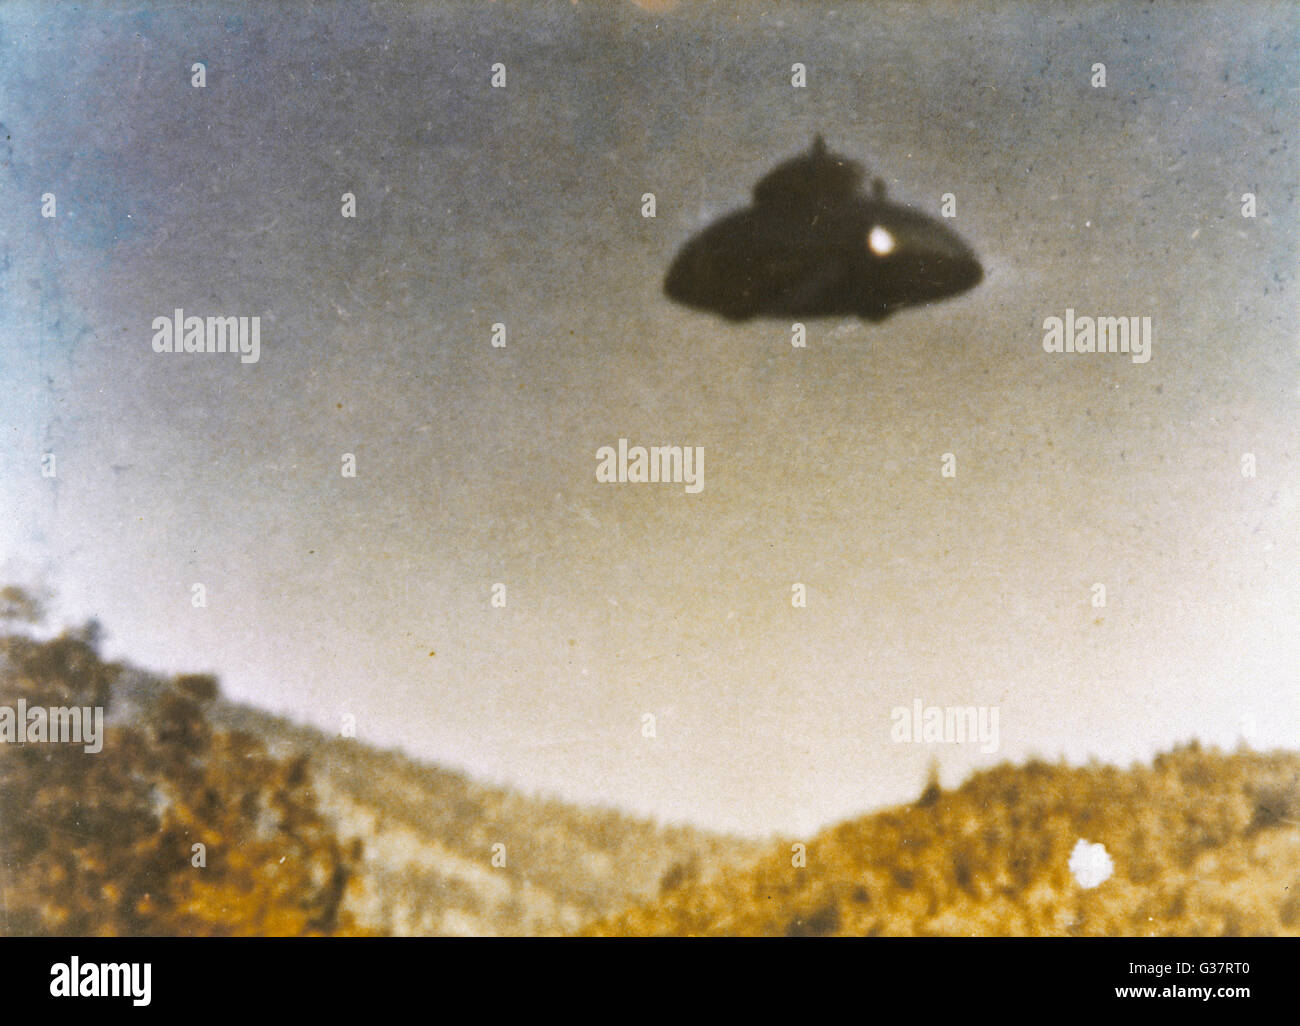 Adamski-Typ UFO fotografiert angeblich von Fritz van Nest in der Nähe von Kanab, Utah, bei vollem Tageslicht Datum: 21. März 1968 Stockfoto